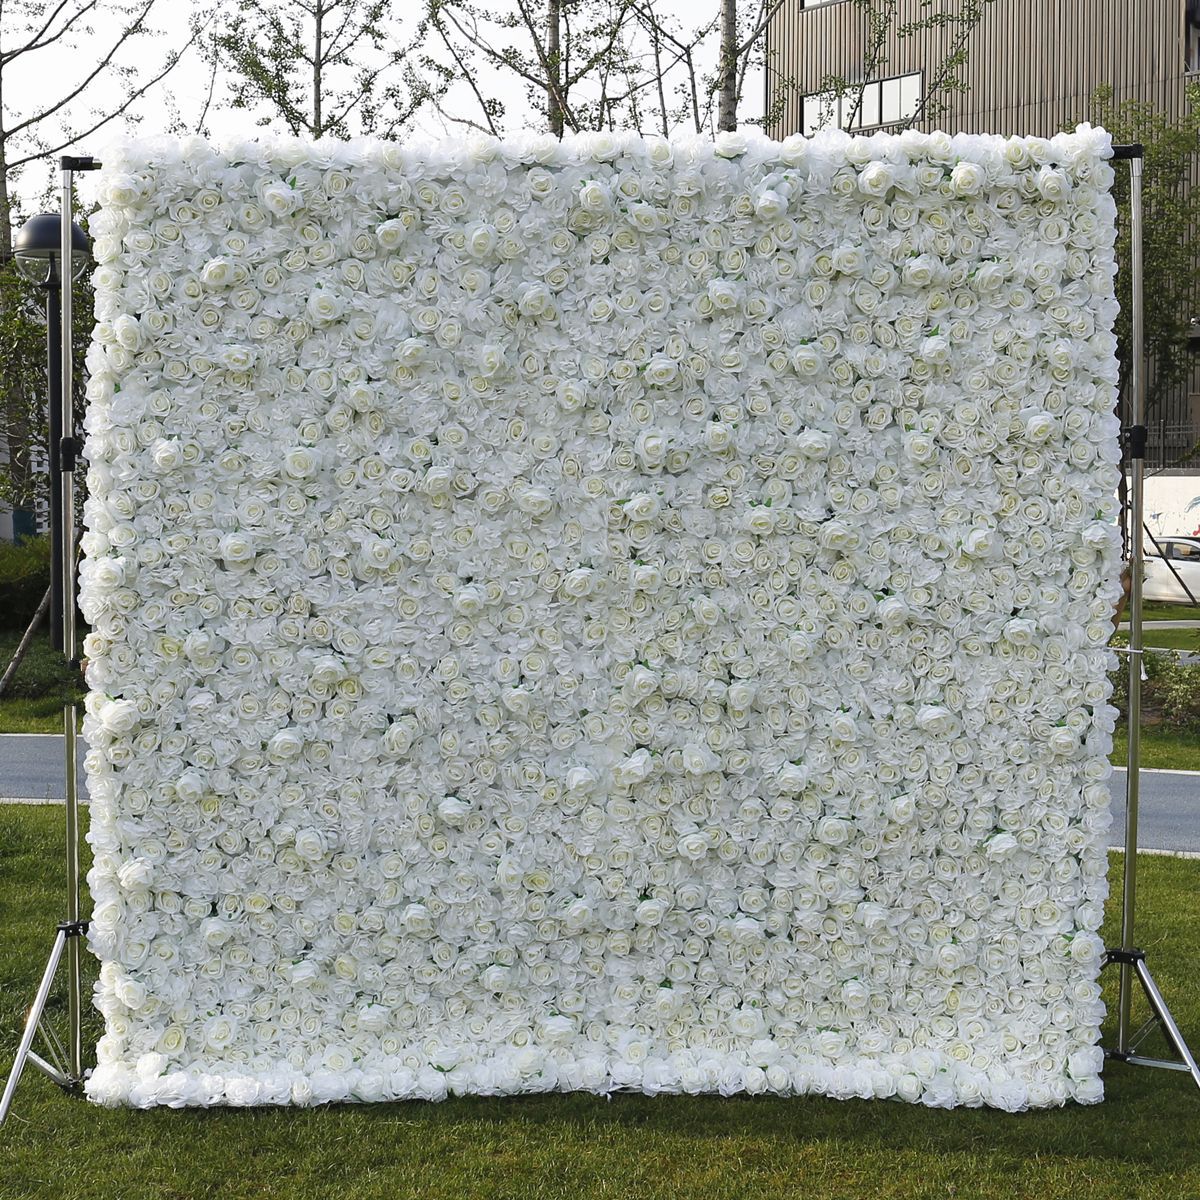 Cross border valkoinen 5D kangas pohja simulaatio kukka seinä tausta seinä häät rekvisiitta internet julkkis studio valokuvaus pioni kukka seinä